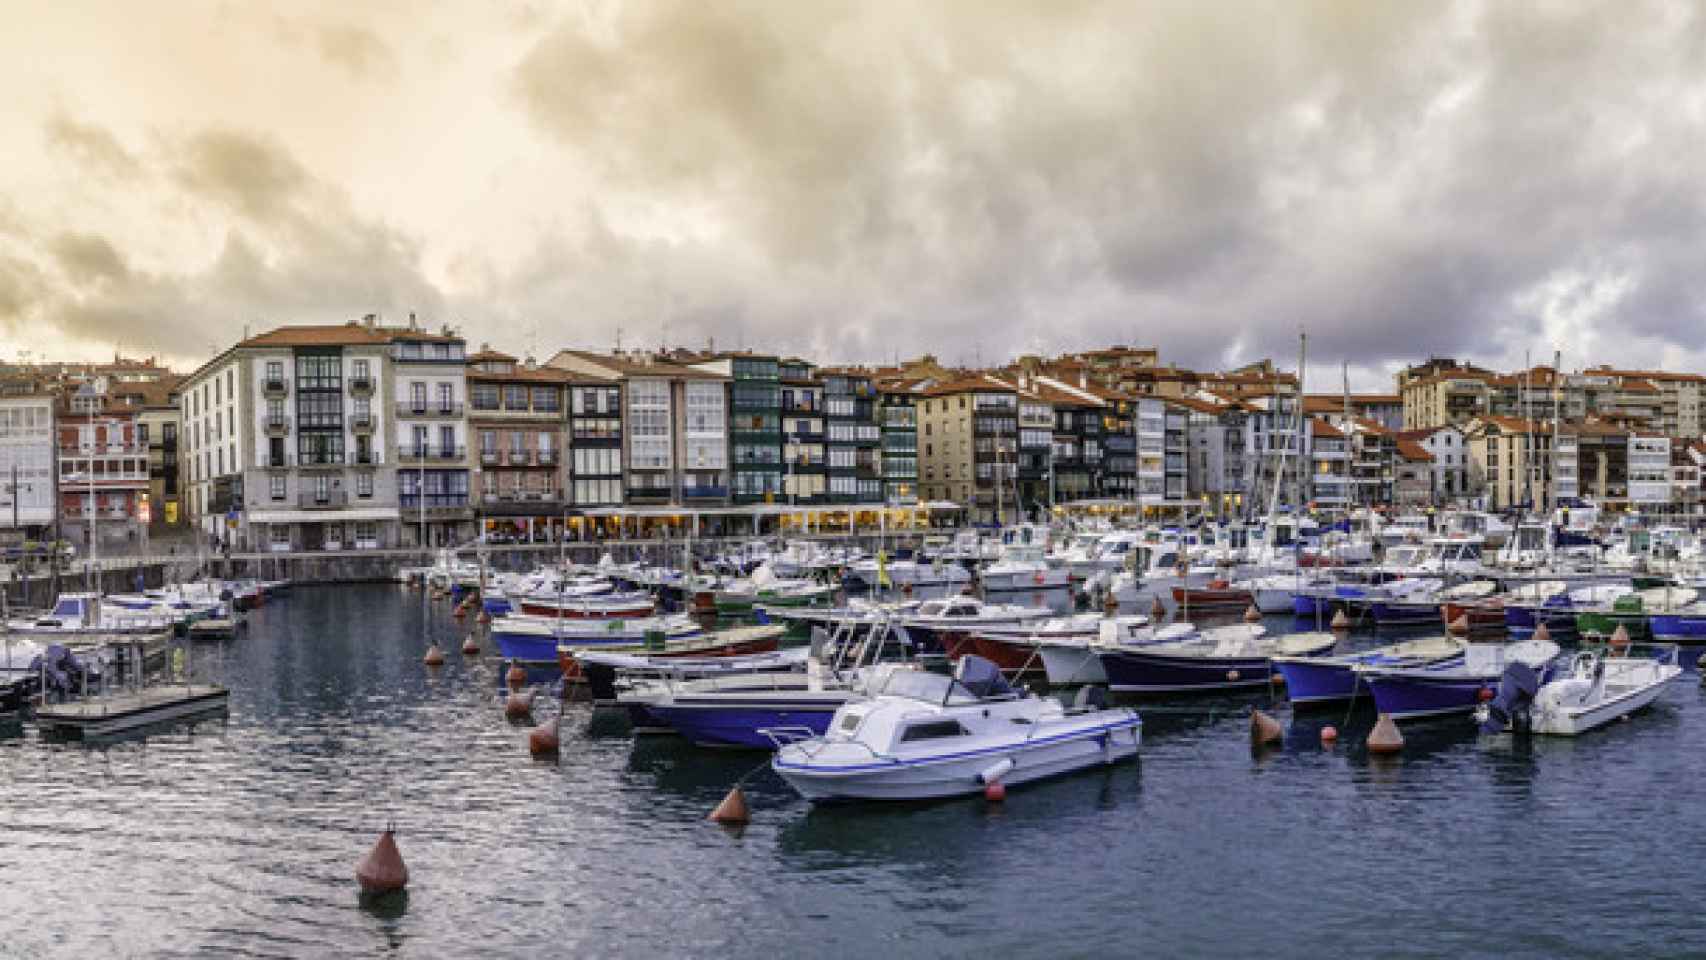 Panorámica del pueblo pesquero más bonito de Euskadi con unas casas coloridas.